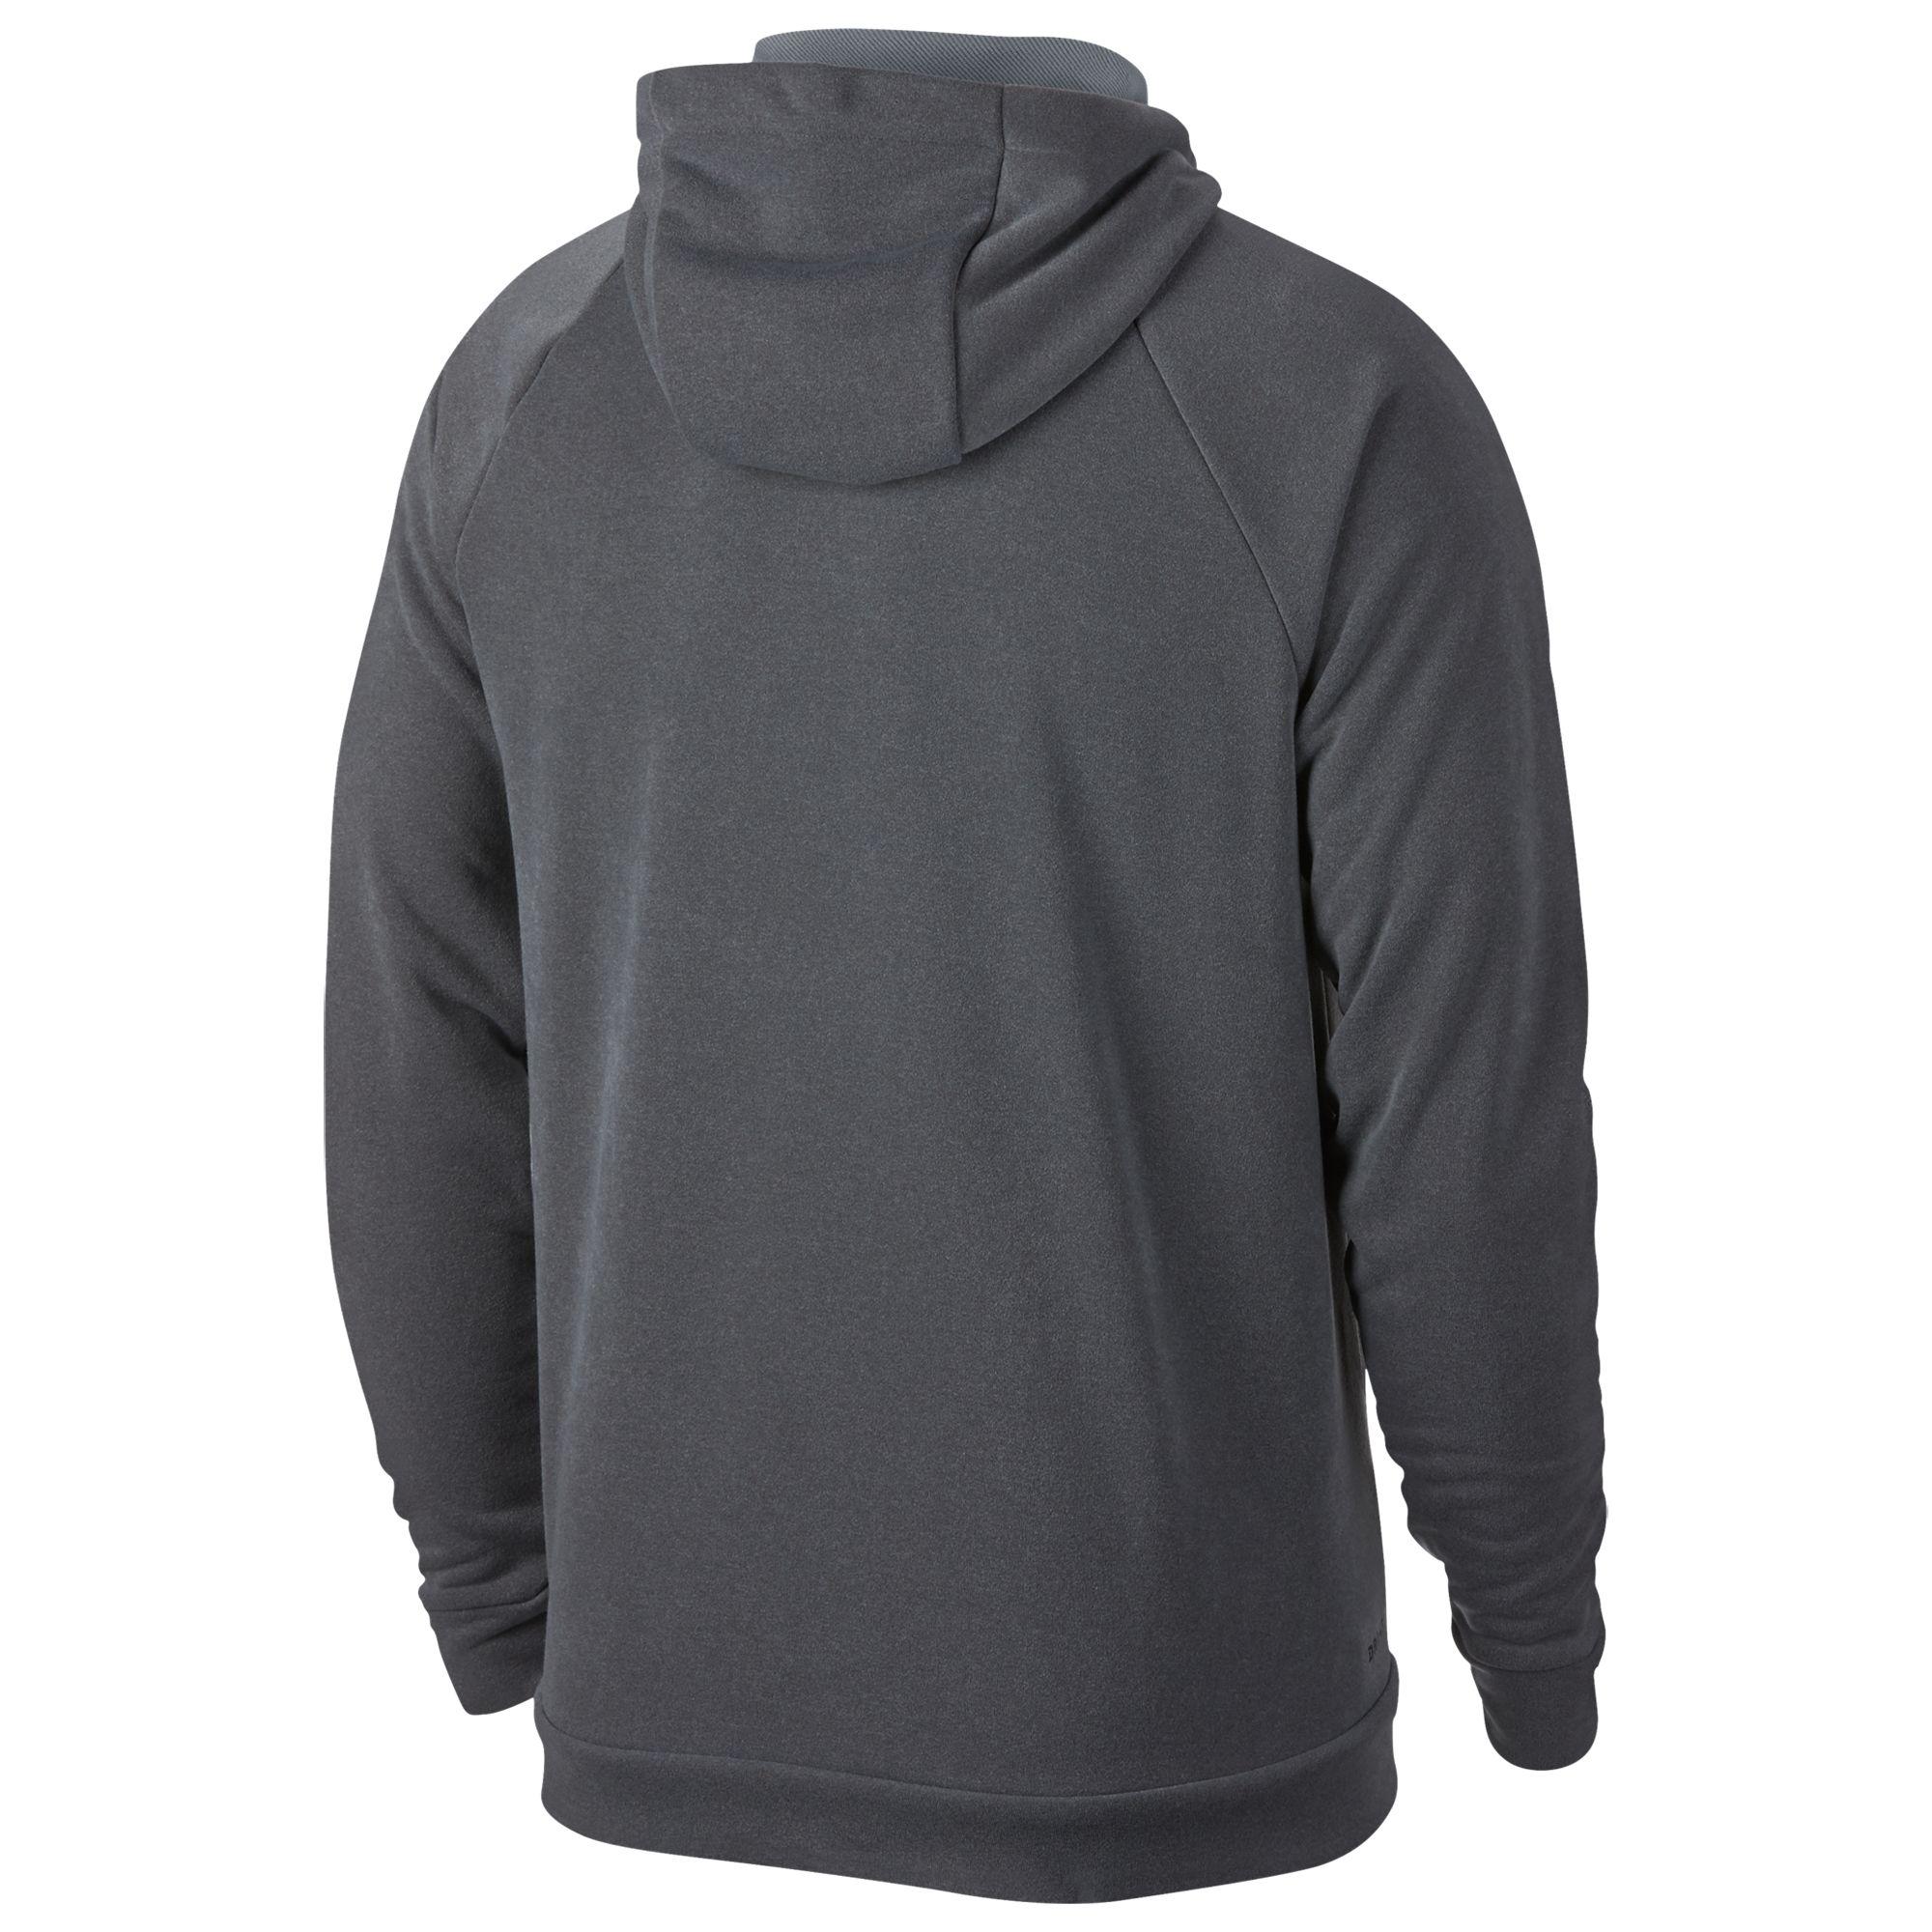 dark grey nike zip up hoodie